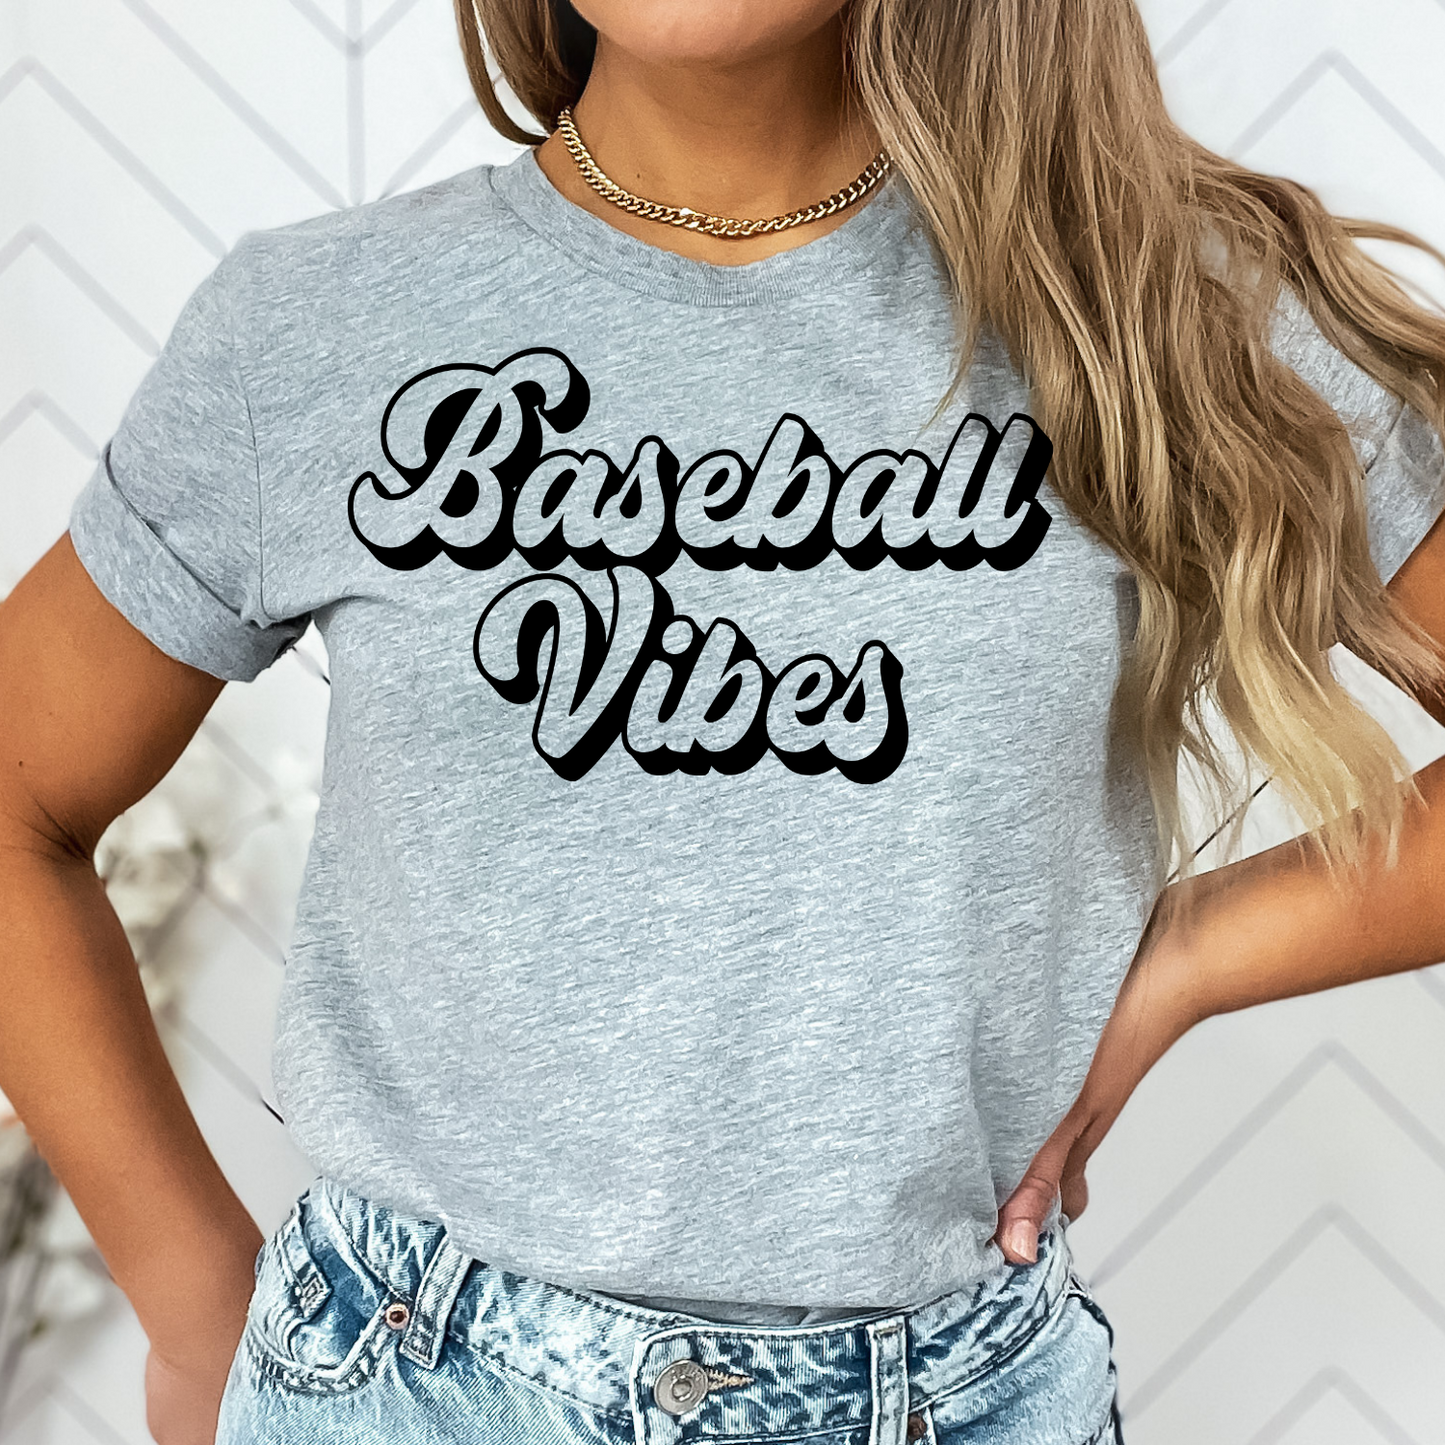 Baseball VIbes Shirt